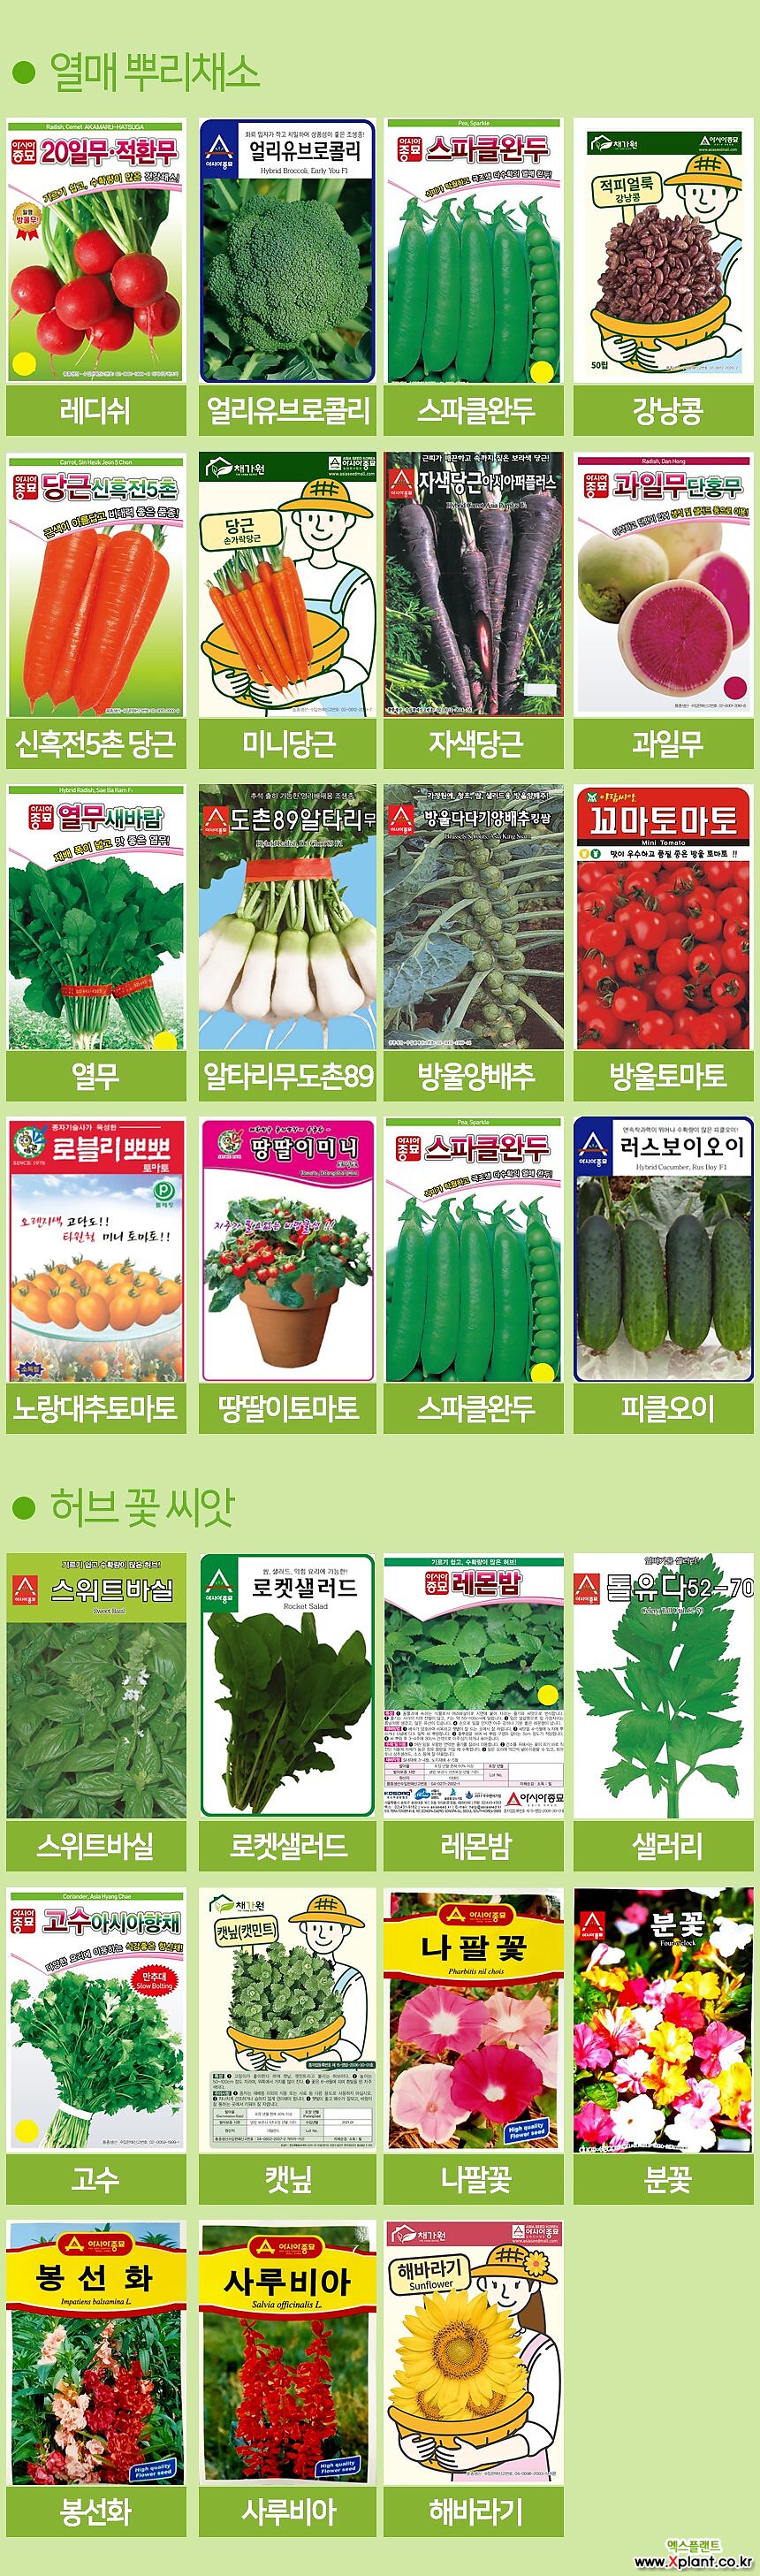 세경팜 오크린상추 씨앗 베란다텃밭 식물키우기